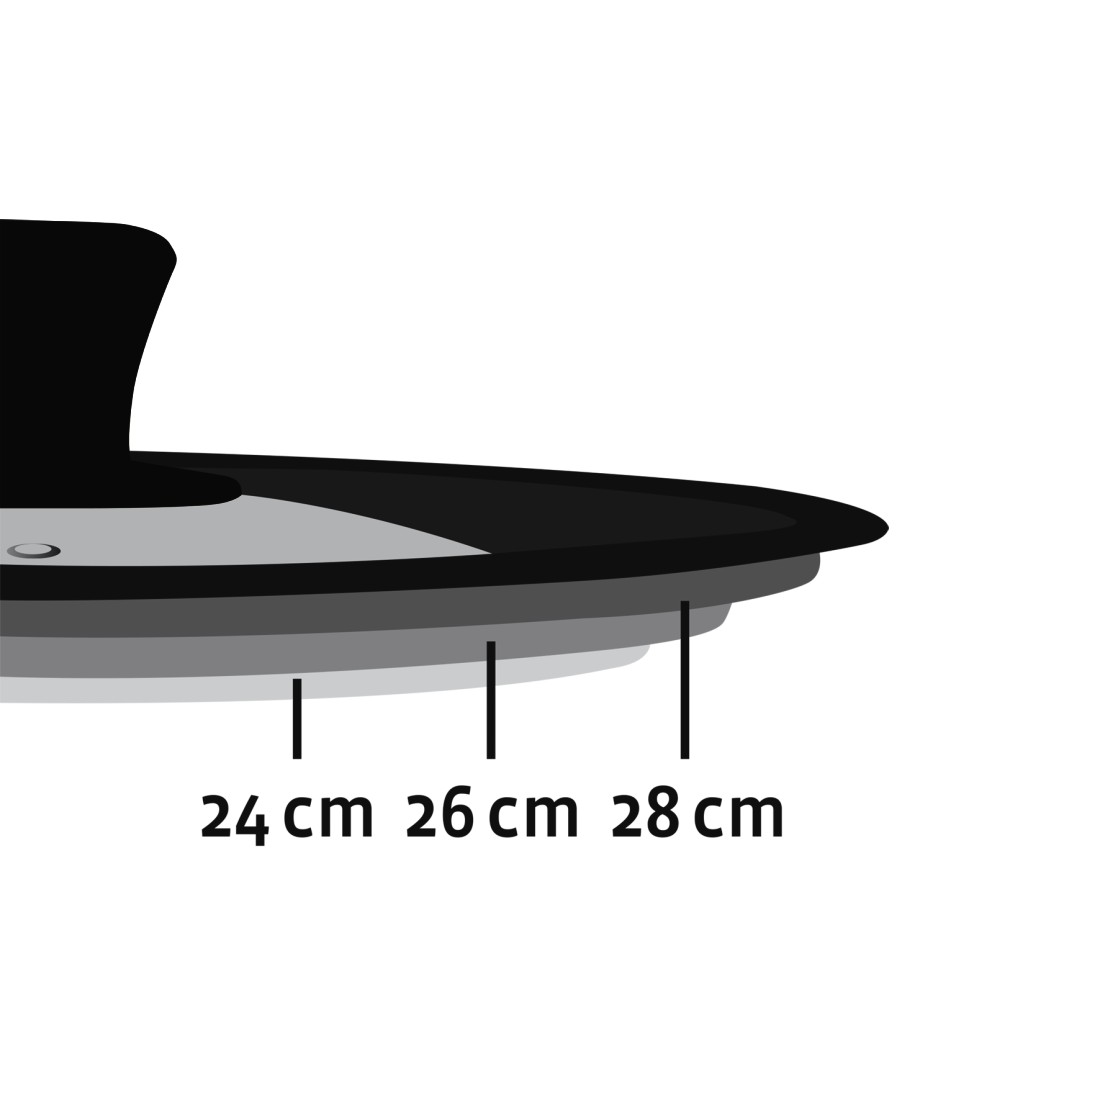 dex4 Druckfähiges Detail 4 - Xavax, Universaldeckel mit Dampfloch für Töpfe und Pfannen, 24, 26, 28 cm, Glas